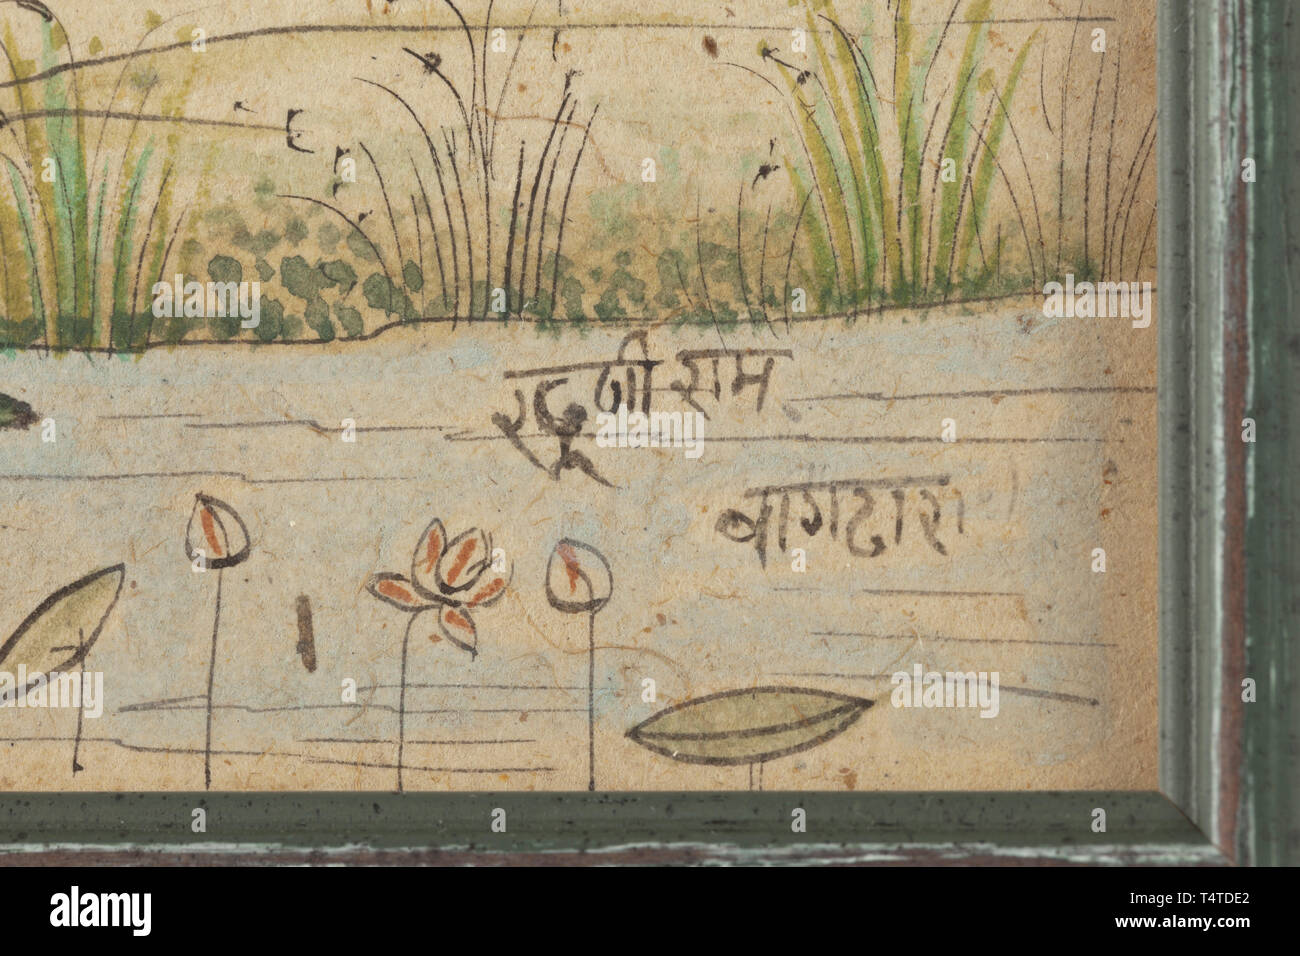 Eine indische Miniatur, Nathadwara Schule, unterzeichnete Kubiram Gopilal, Anfang des 20. Jahrhunderts, Gouache auf Papier. Darstellung von Krishna und Radha unter einem Baum, nach schmücken die Kühe. Unten rechts "Khubiram Gopilal" unterzeichnet. Gerahmt und unter Glas. Abmessungen der Rahmen 29,5 x 39,5 cm. historischen, geschichtlichen, Additional-Rights - Clearance-Info - Not-Available Stockfoto